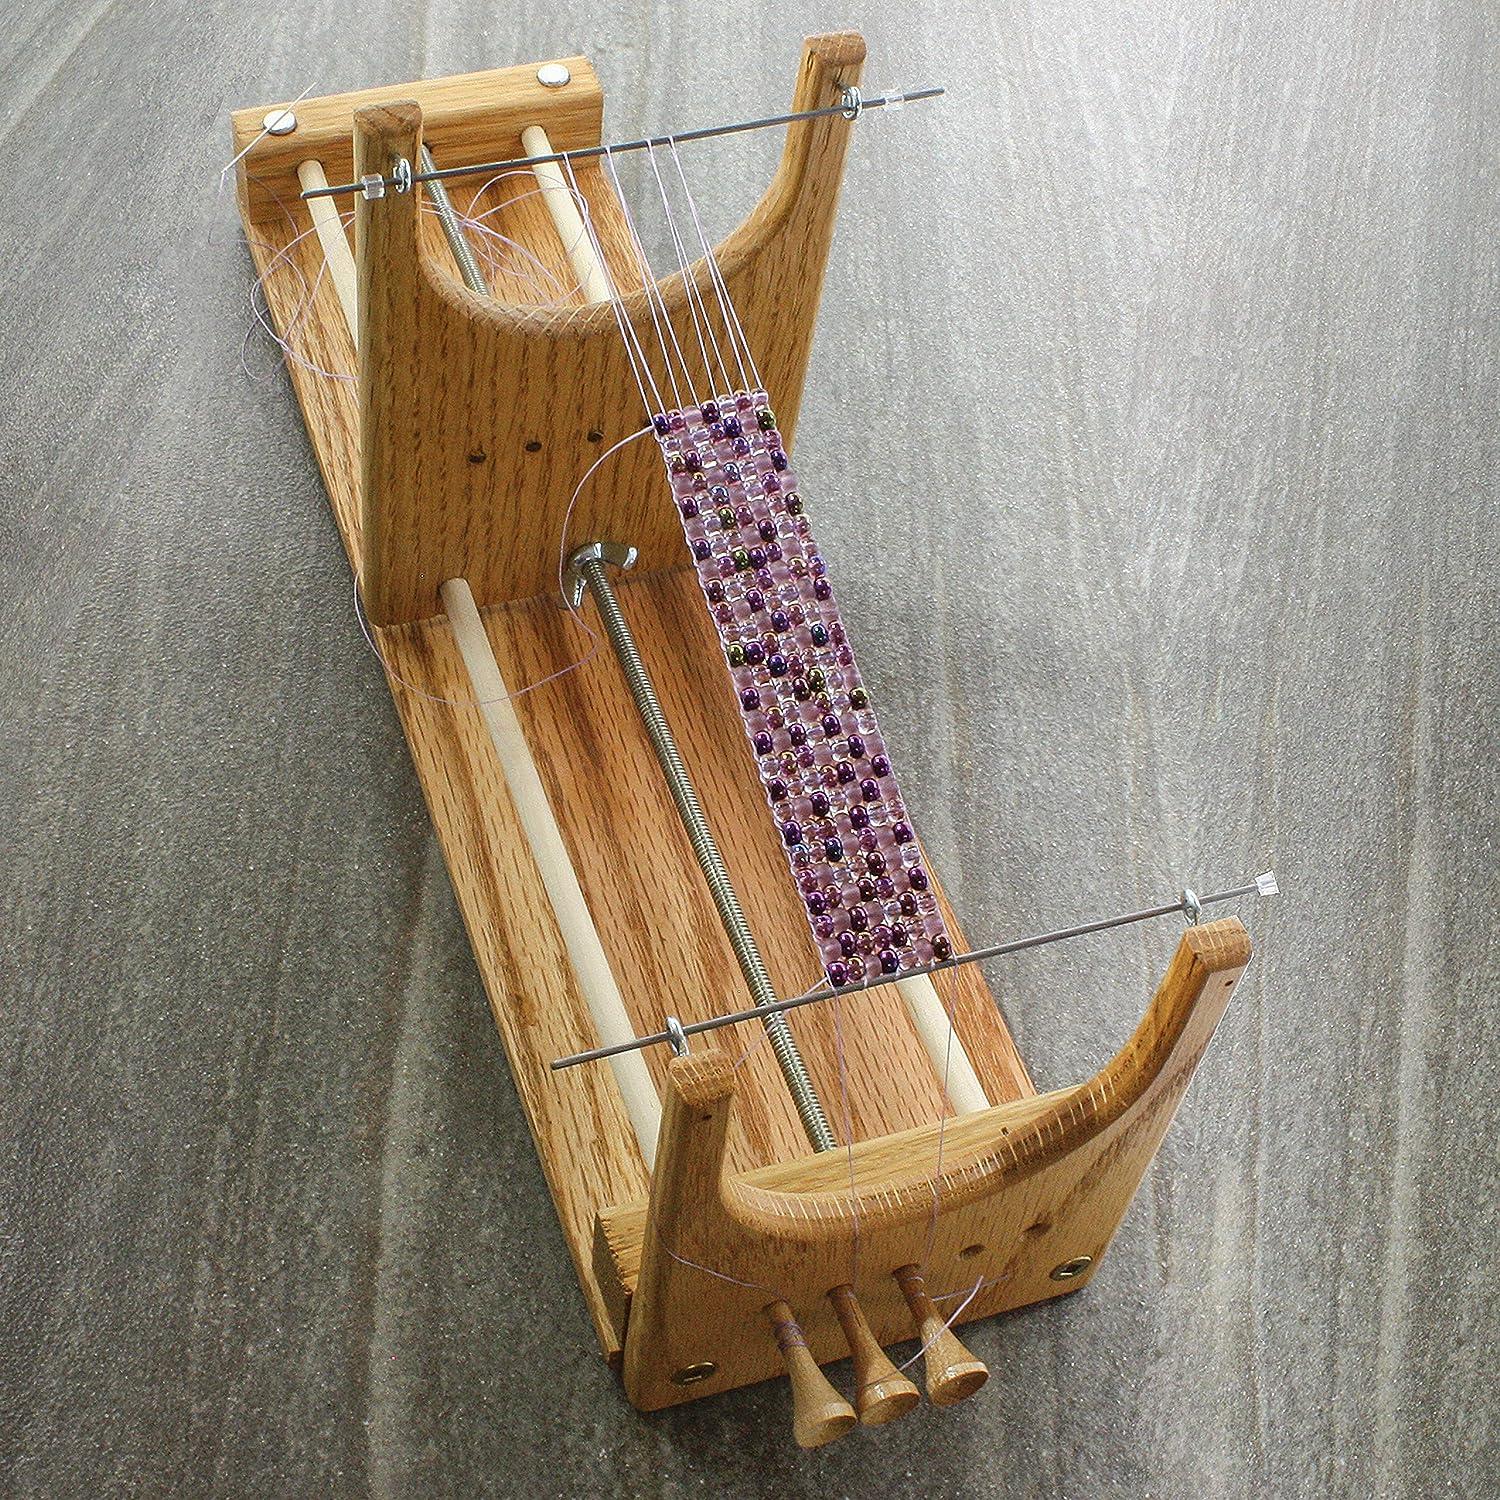 The Beadsmith® Rick's Beading Loom